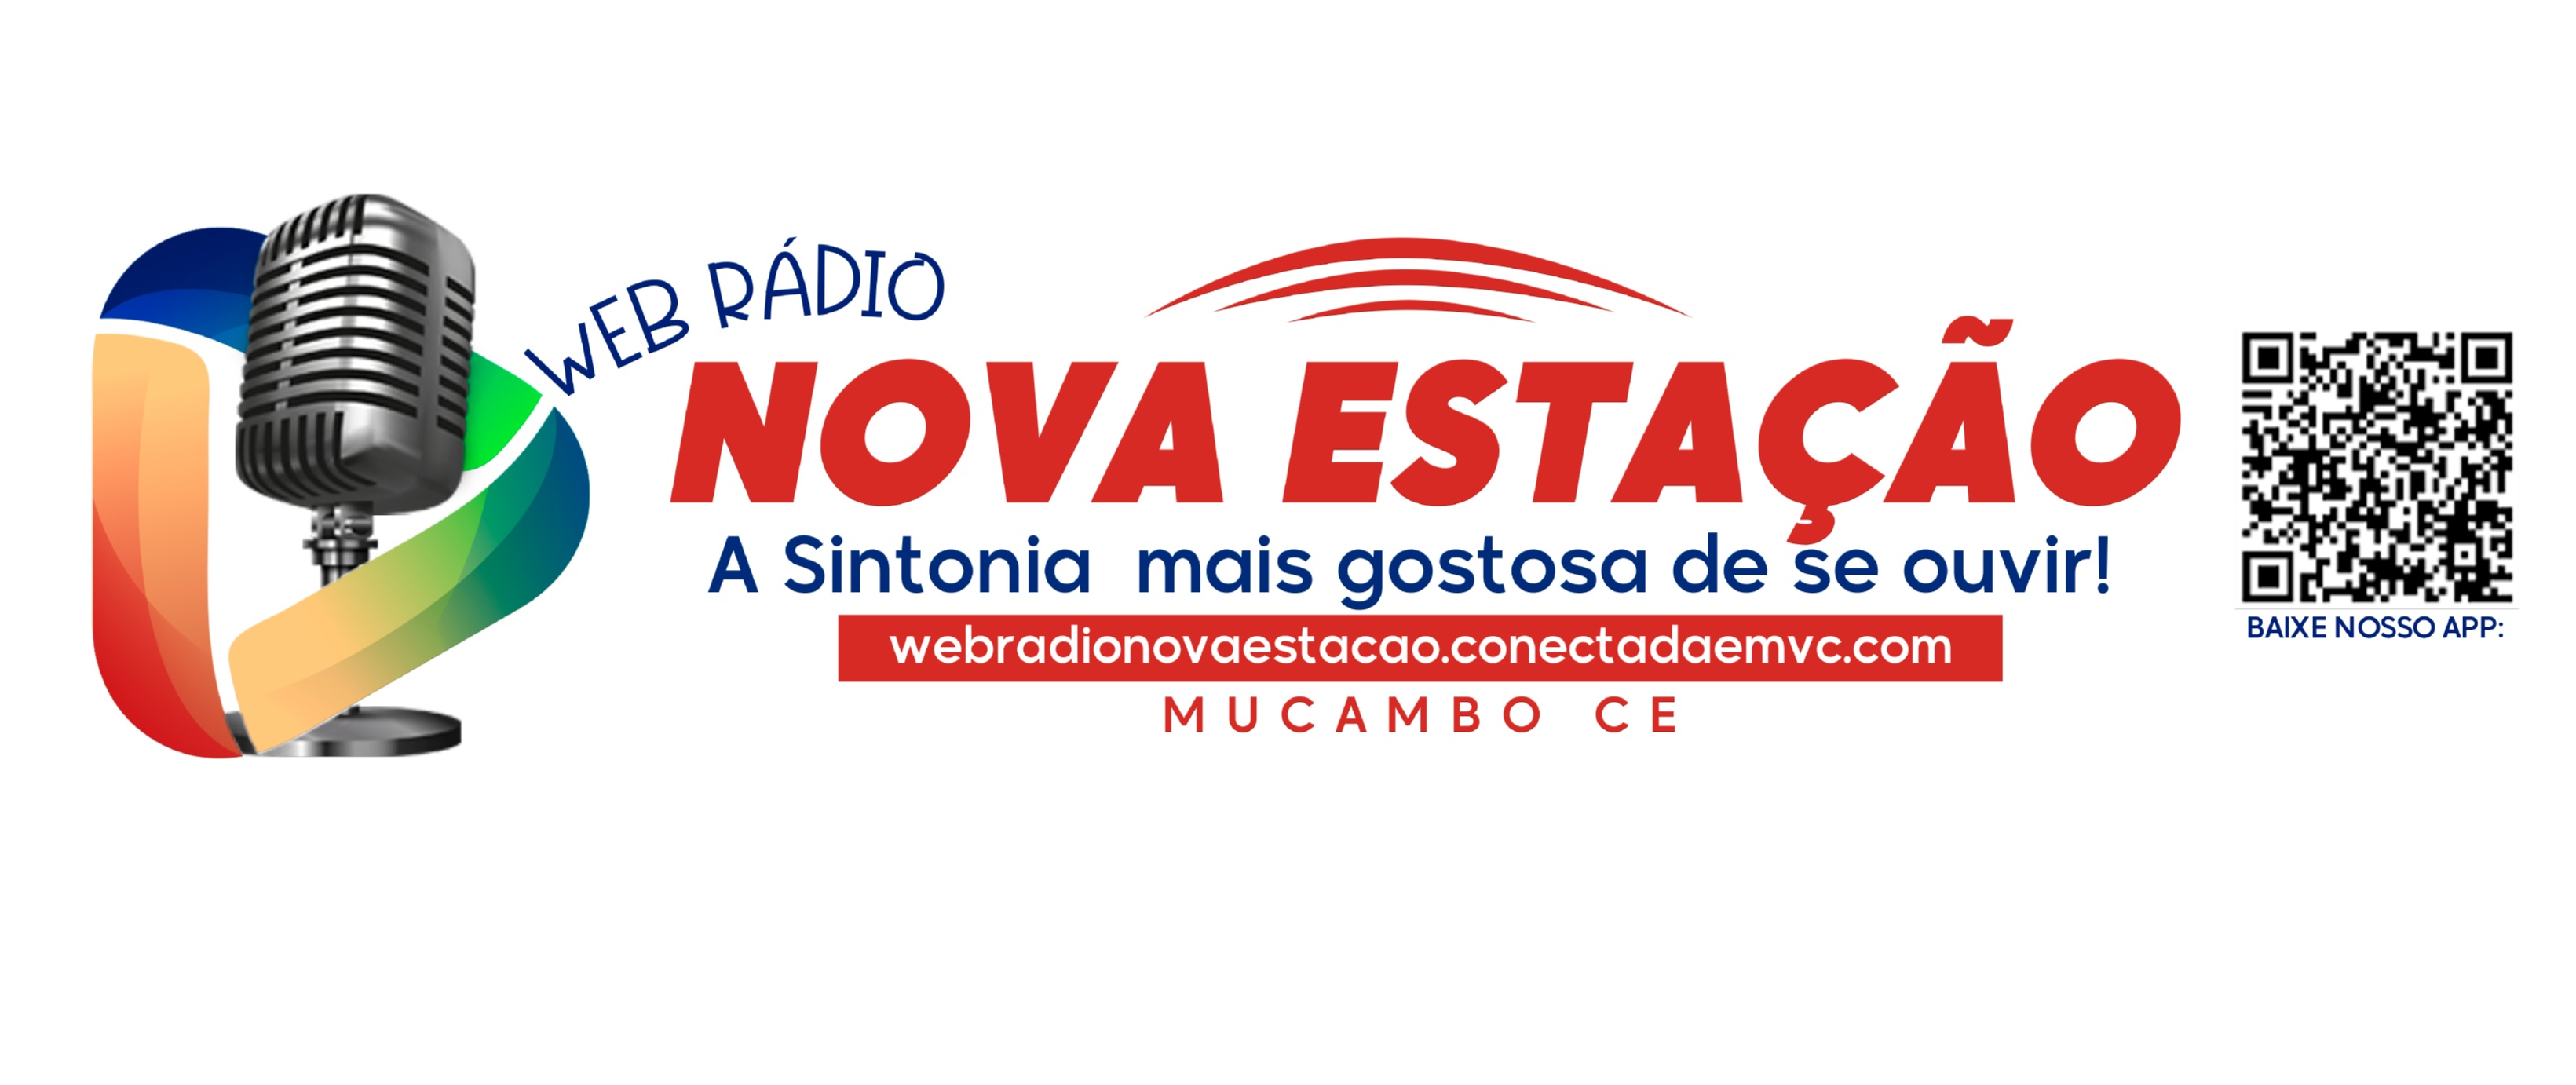 Web Rádio Nova Estação Ceará